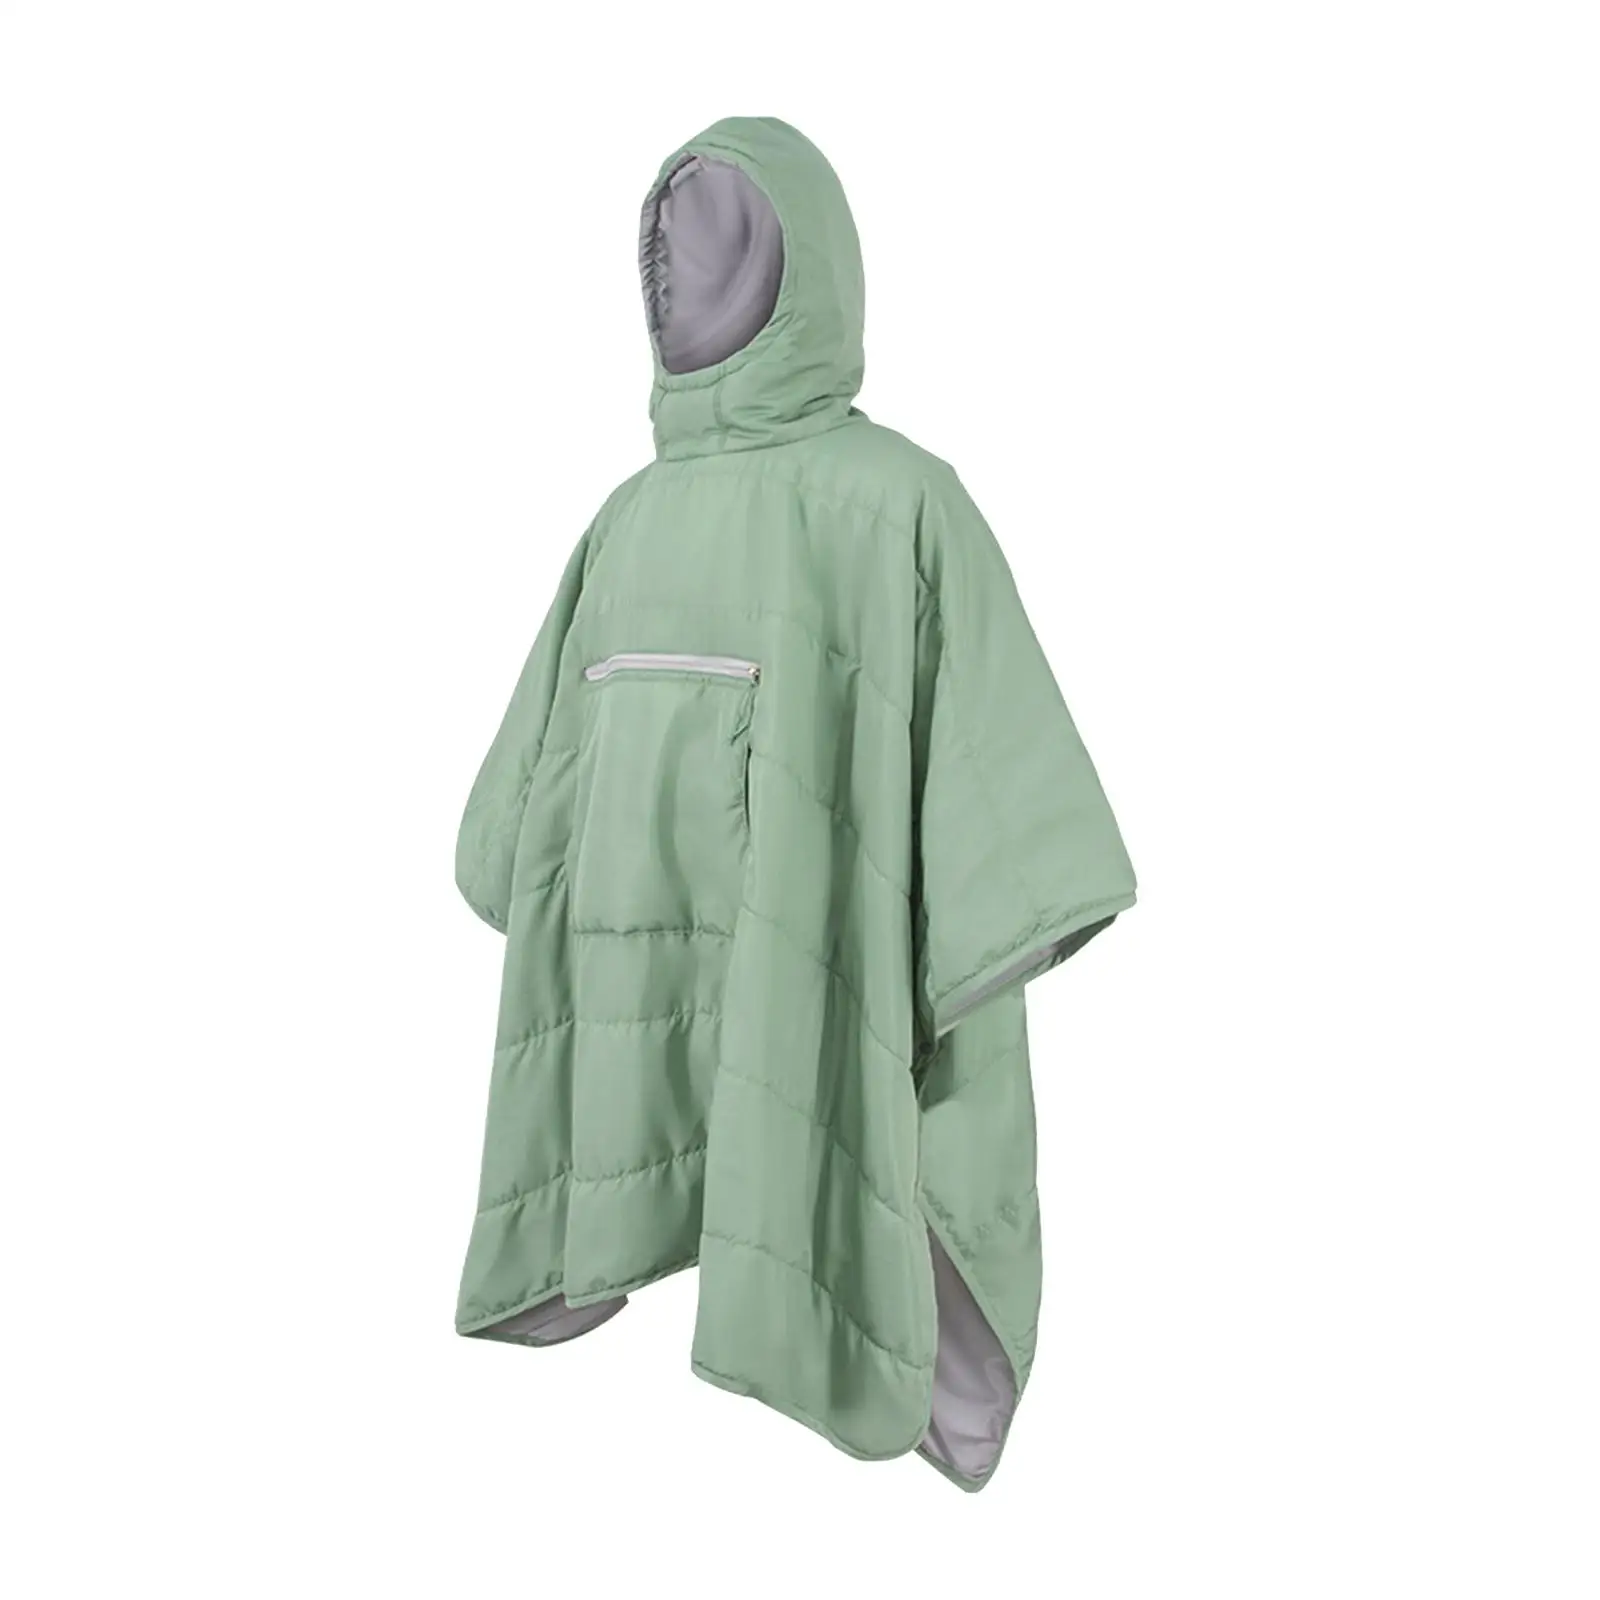 Sleeping Bag Cloak, Wearable Hooded Blanket, Hammock Storage